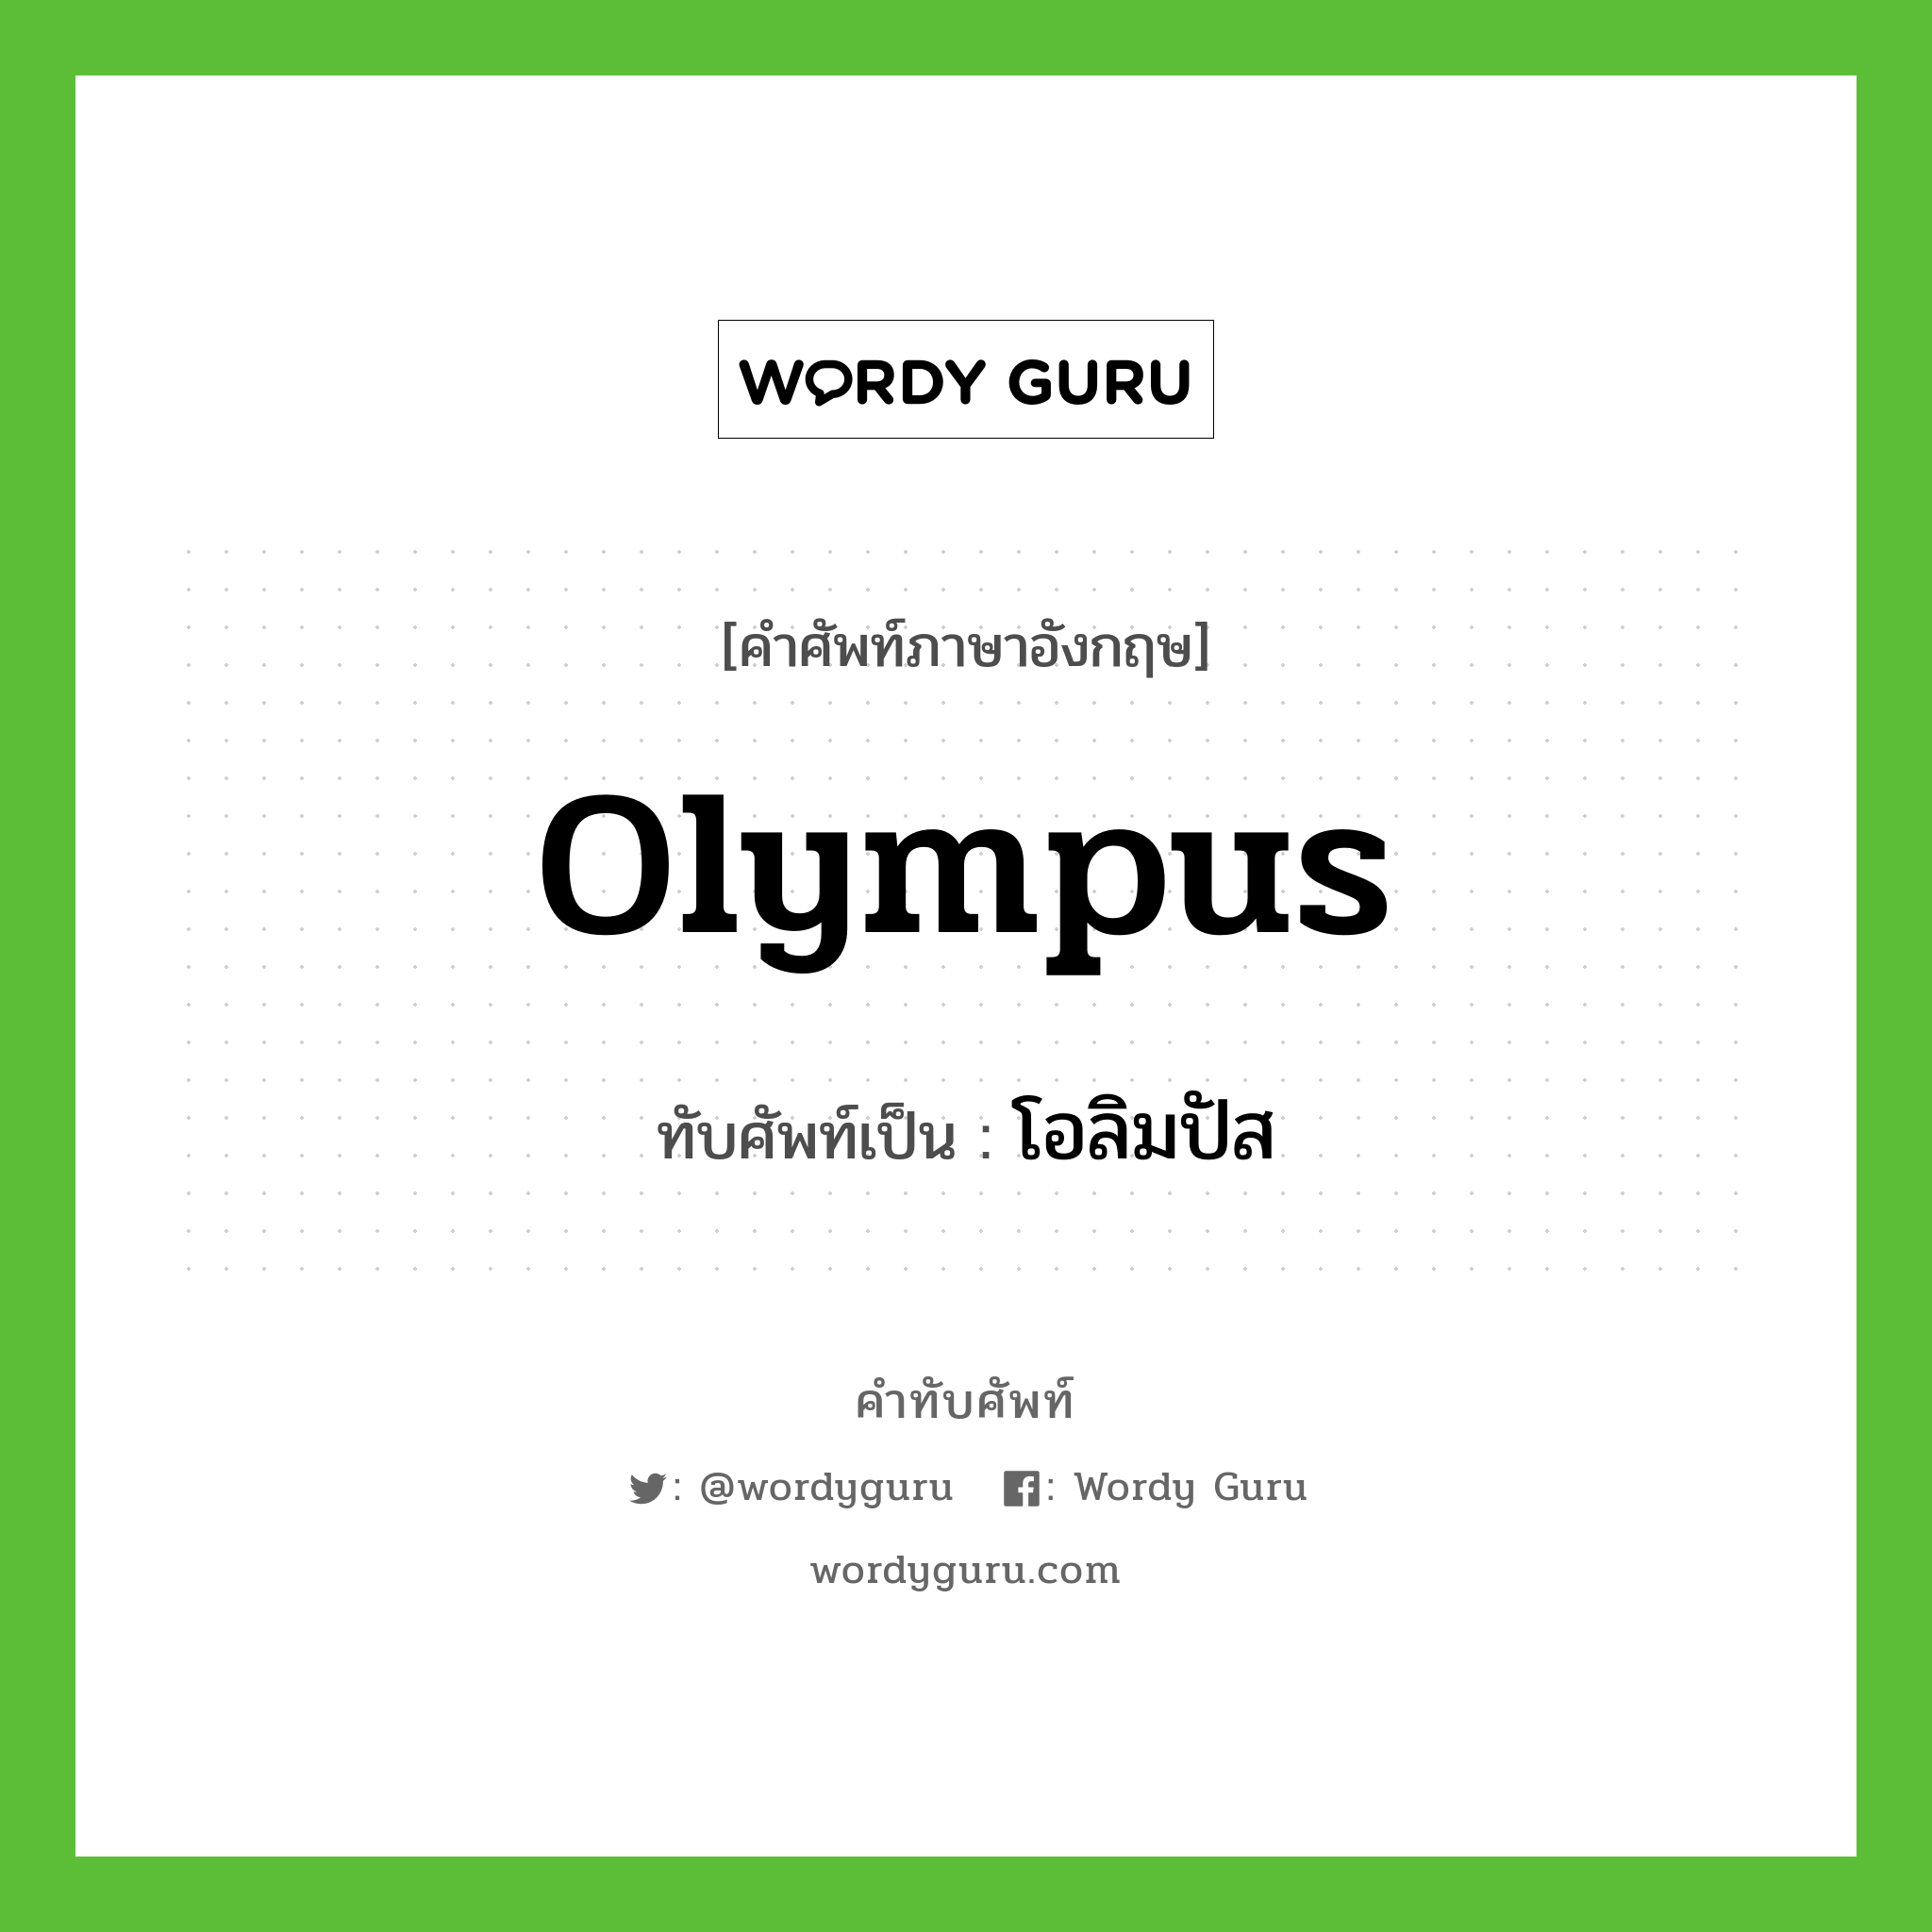 โอลิมปัส เขียนอย่างไร?, คำศัพท์ภาษาอังกฤษ โอลิมปัส ทับศัพท์เป็น olympus